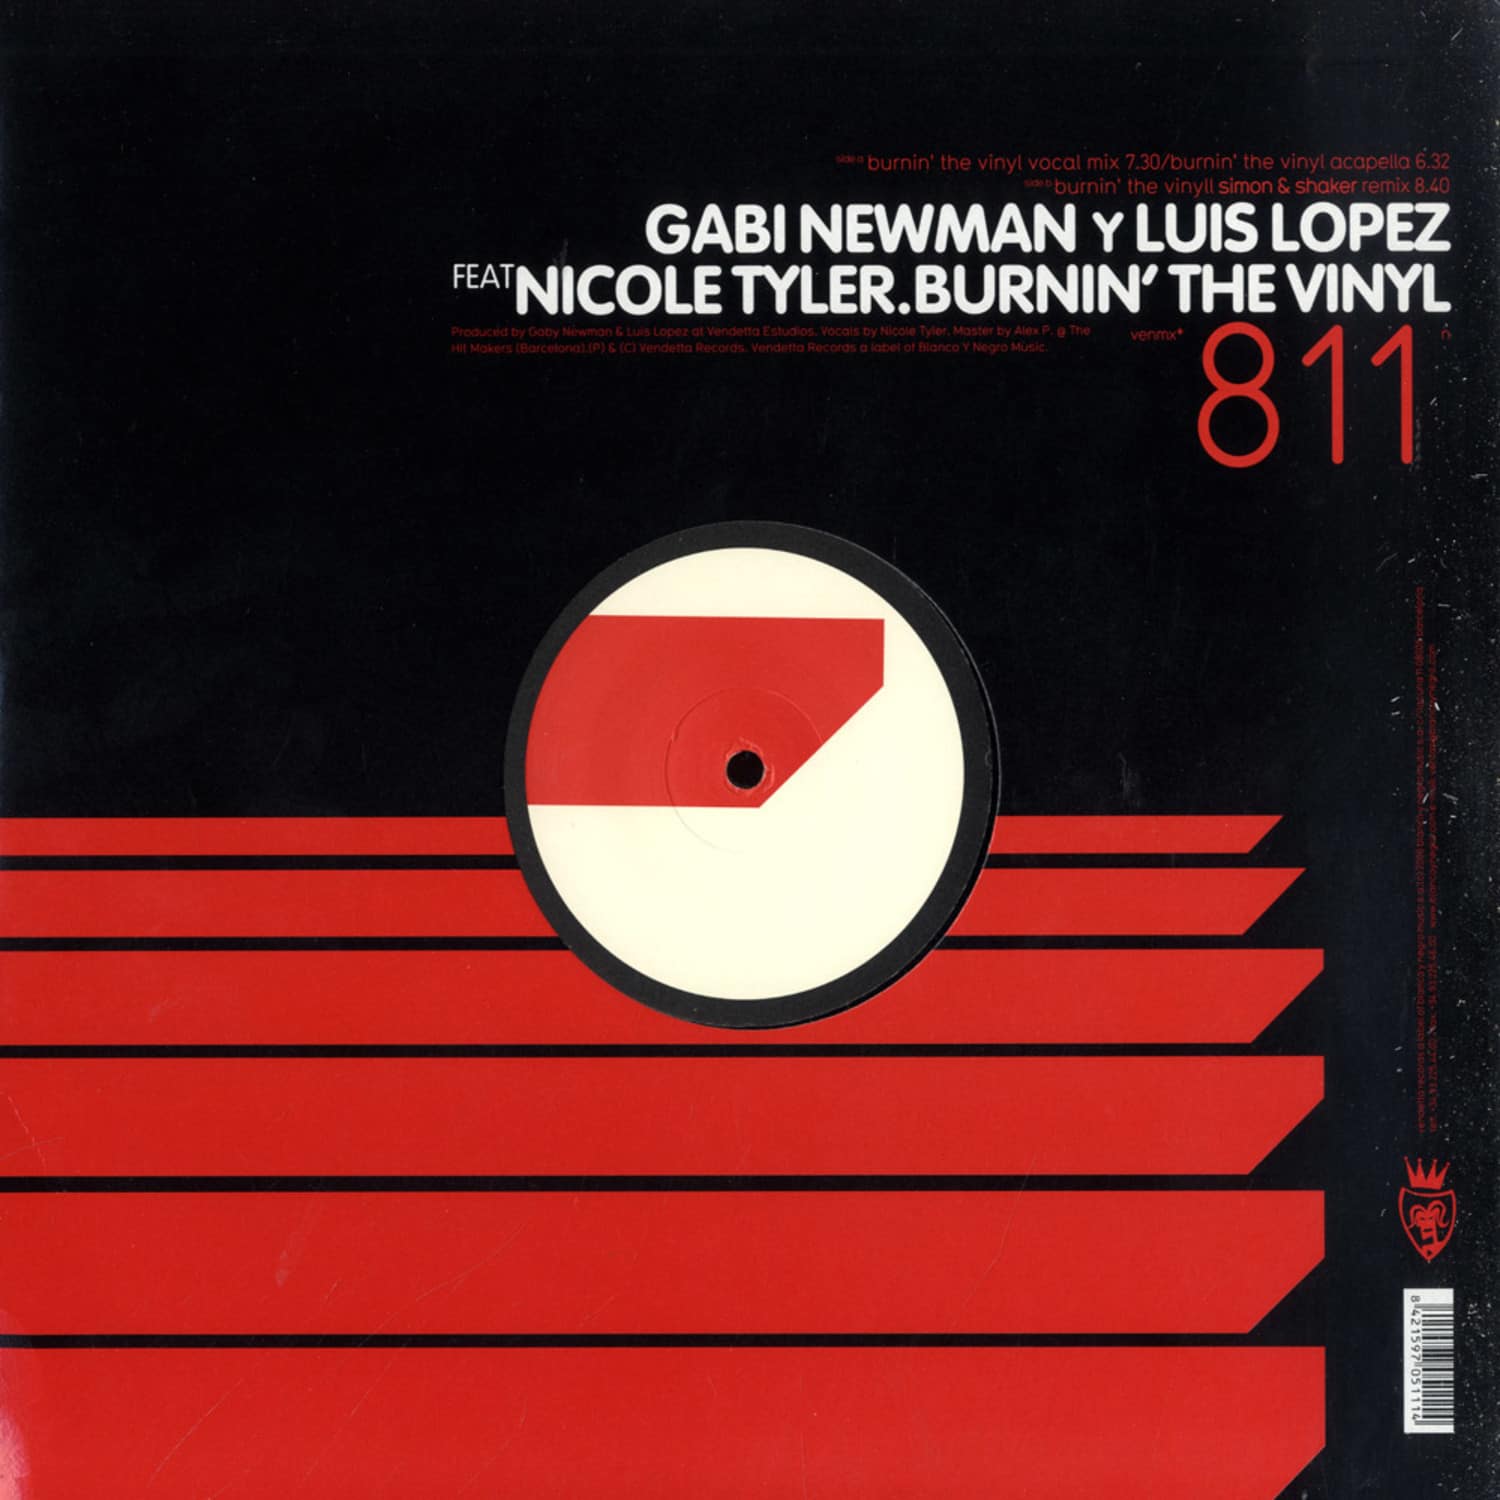 Gabi Newman & Luis Lopez - BURNIN THE VINYL